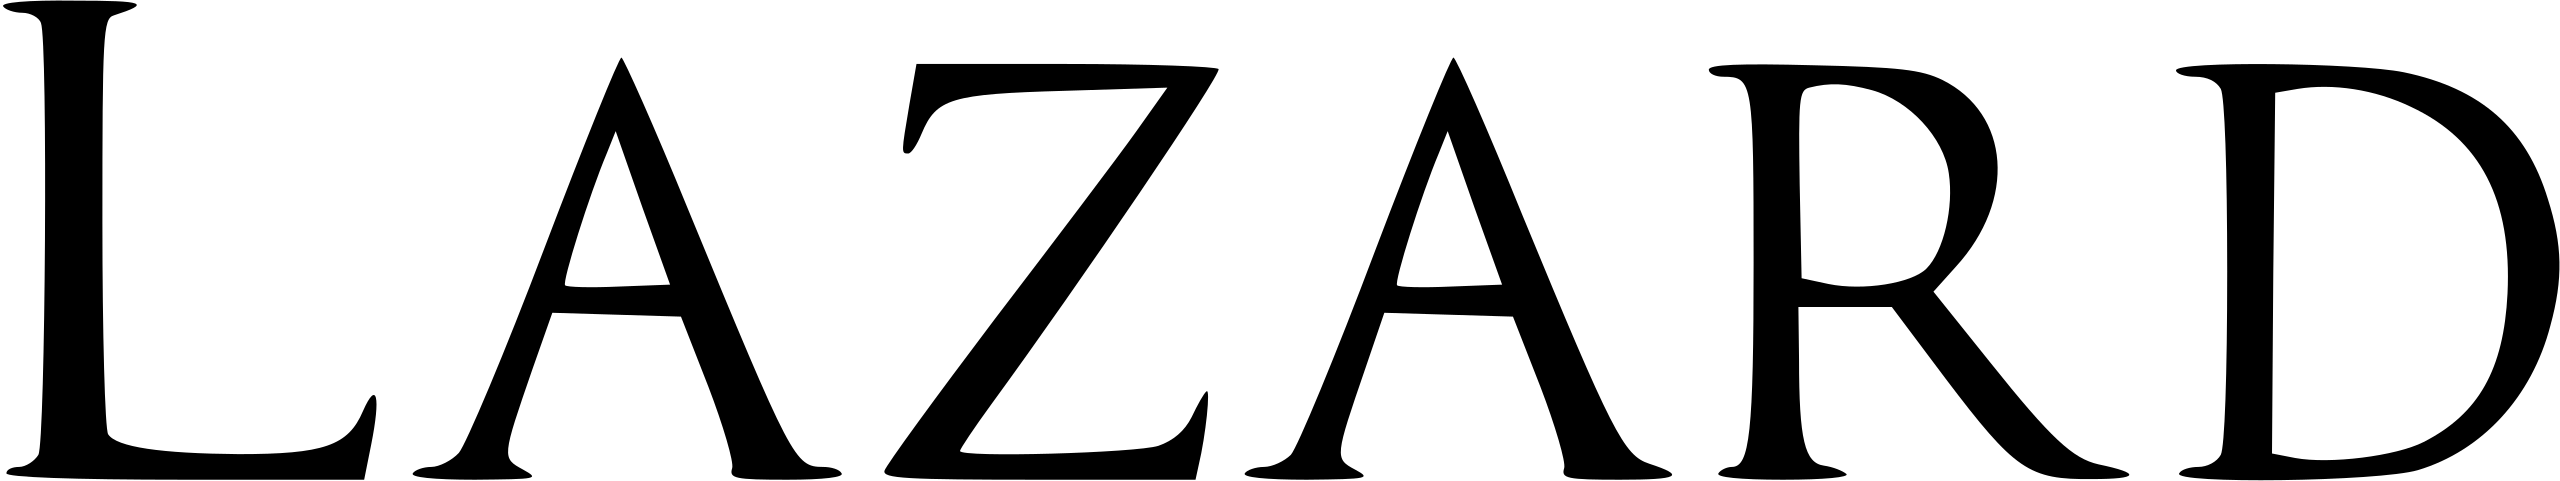 Logo Lazard